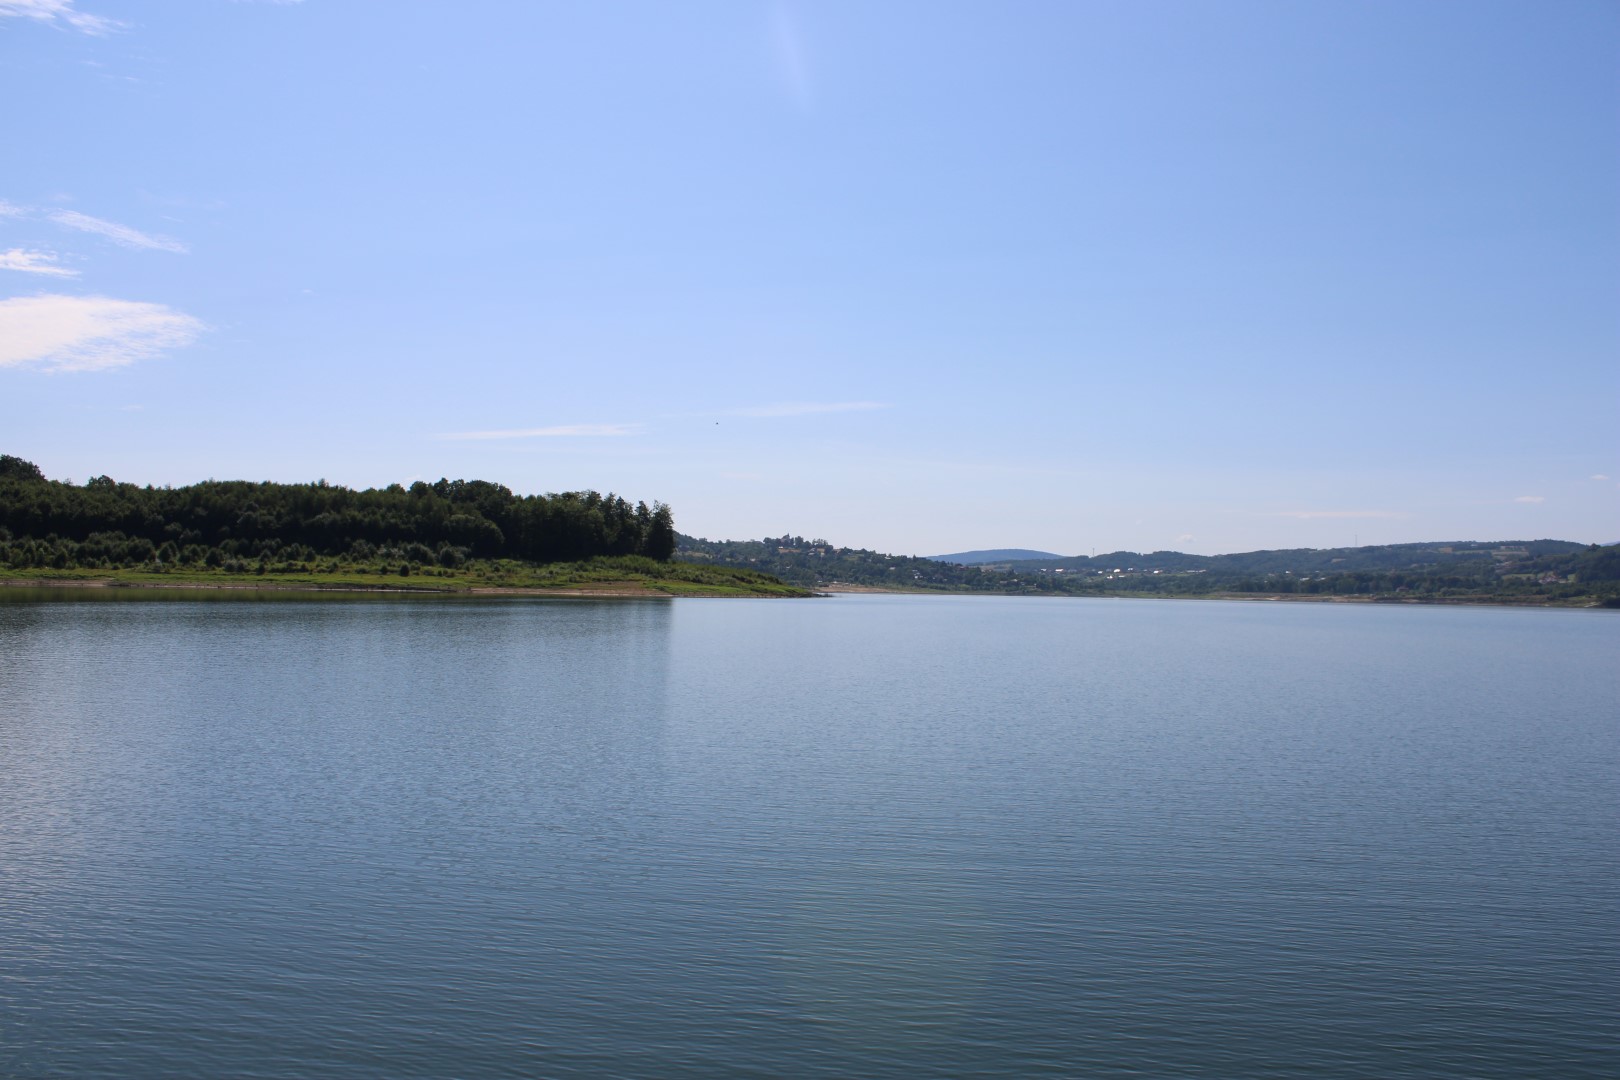 Zdjęcie przedstawia Jezioro Mucharskie w słoneczny dzień, zdjęcie zostało zrobione ze statku.